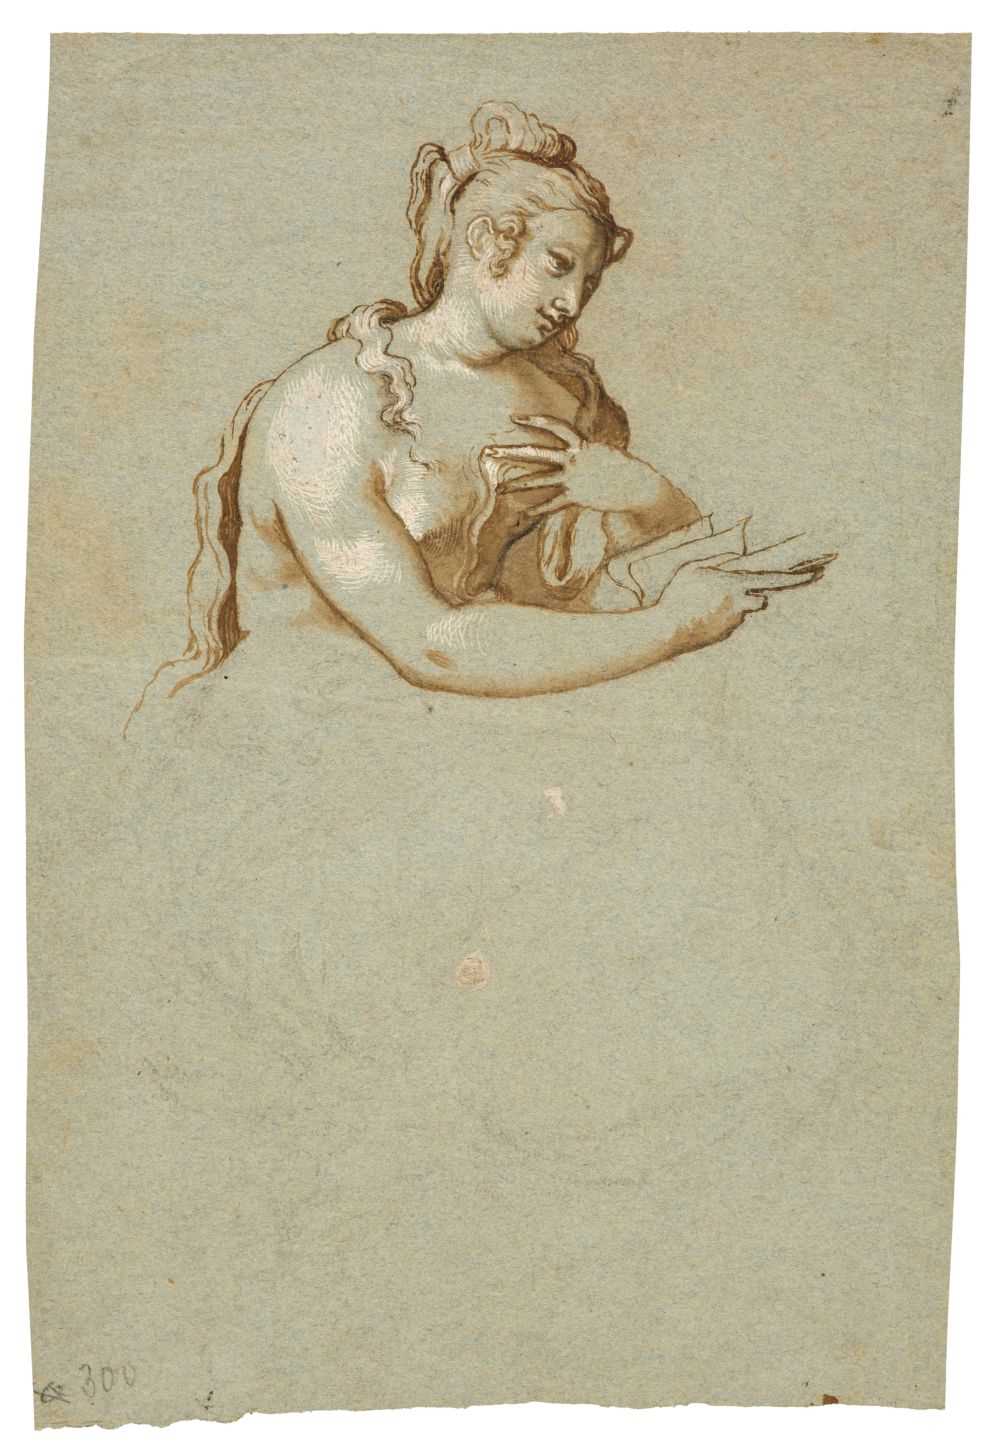 Lot 317 - Farinati (Paolo, 1524-1606). Head and torso of a femal nude seated